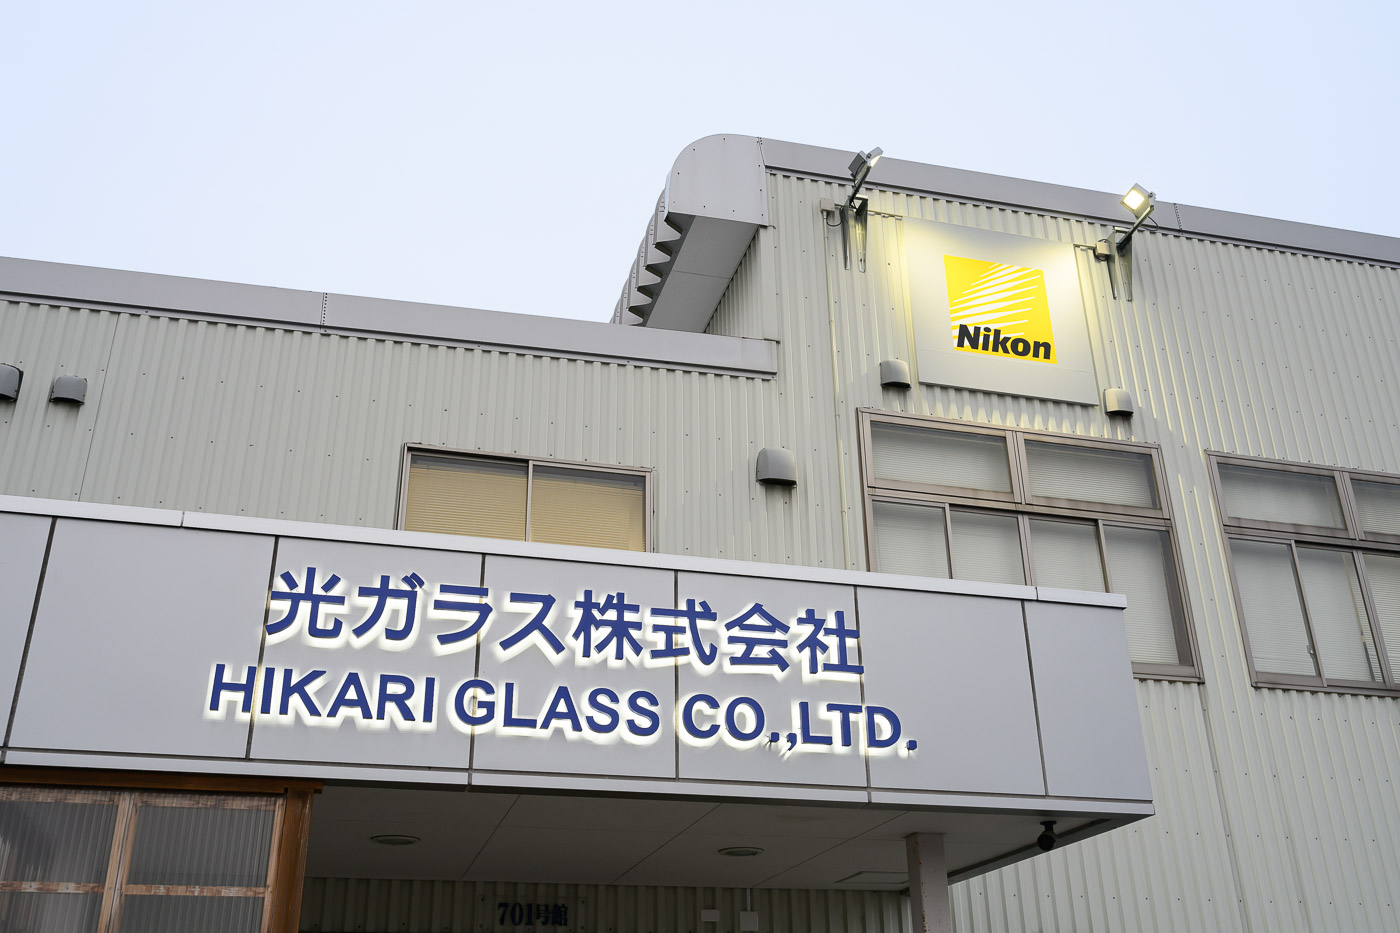 Nikon Hikari Glass